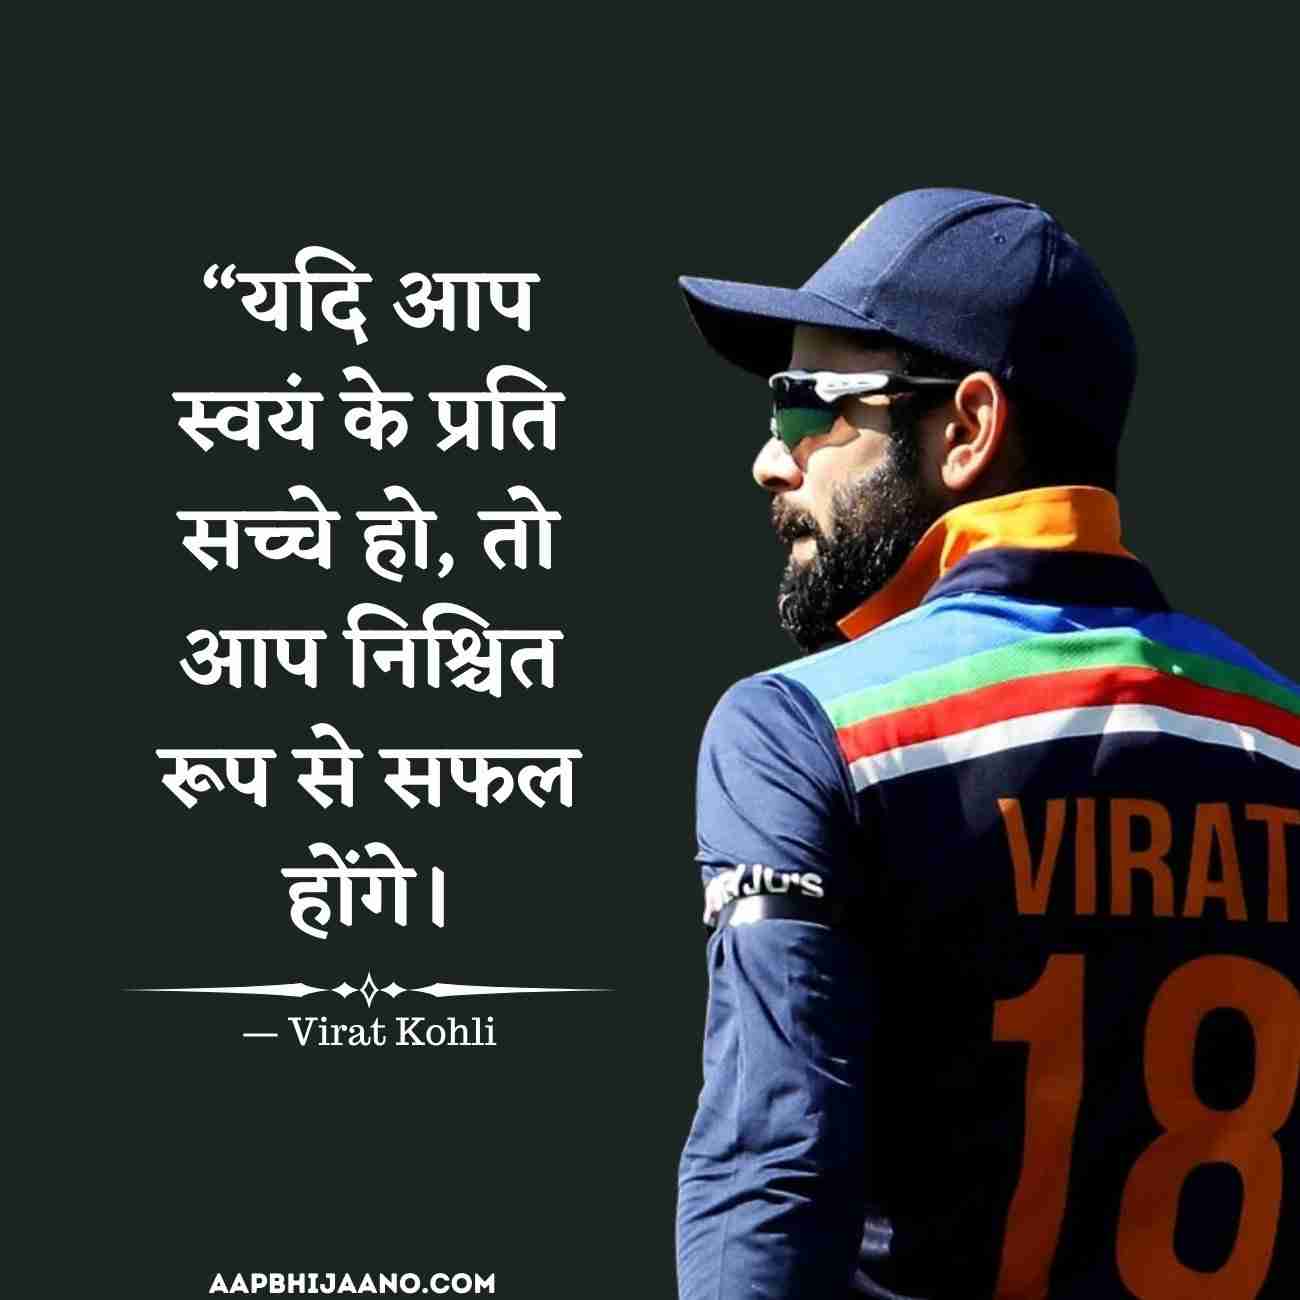 Virat Kohli Quotes in Hindi